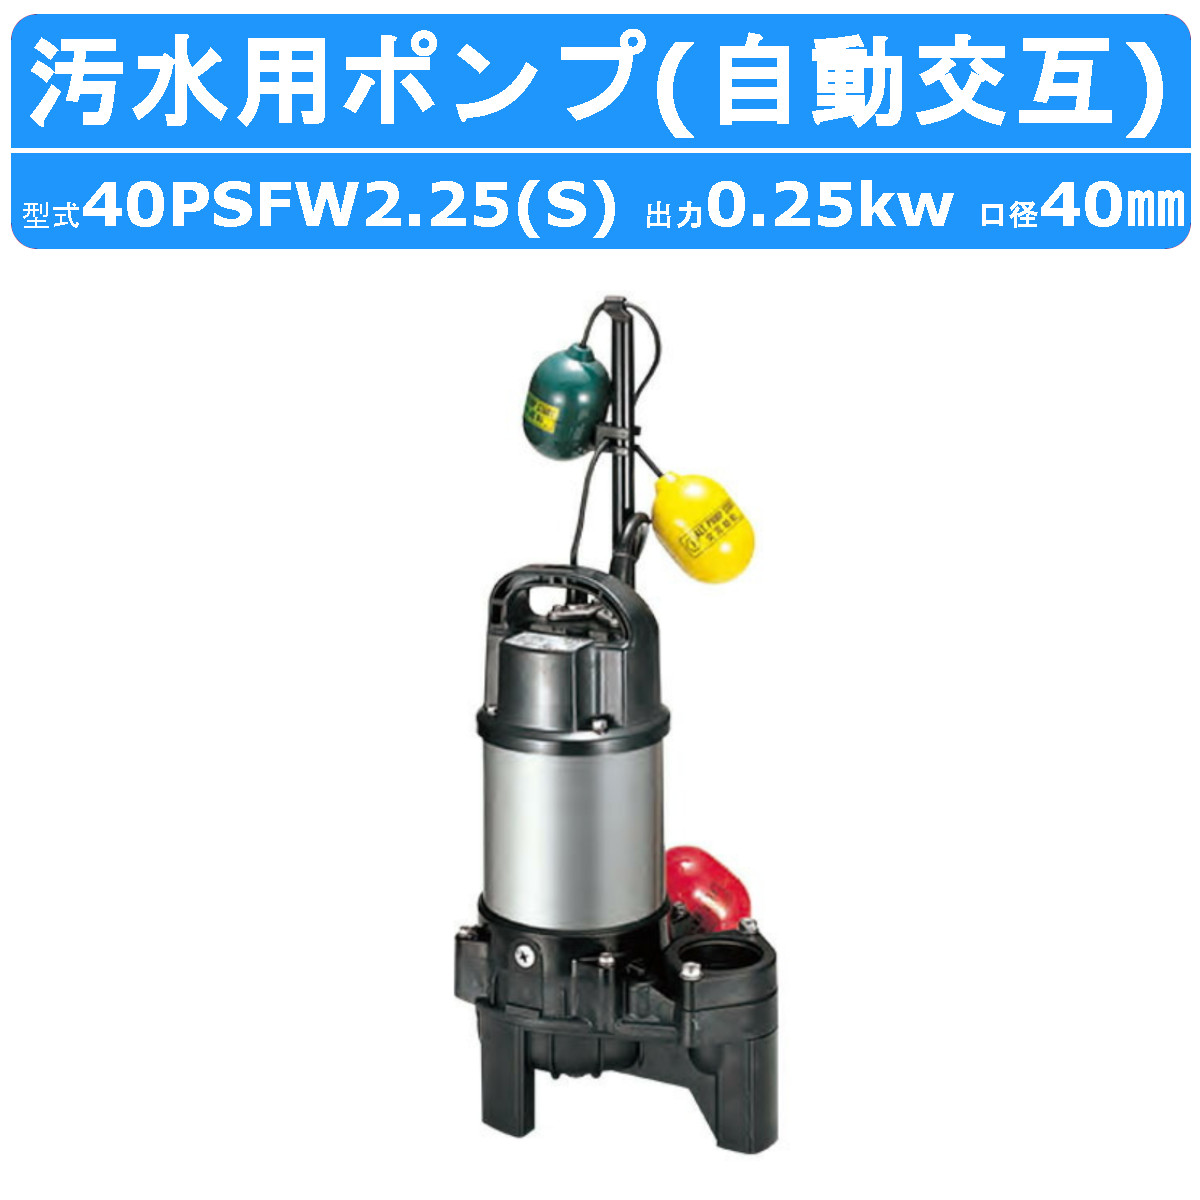 ツルミ 汚水用 水中ポンプ 40PSFW2.25S / 40PSFW2.25 40mm 自動交互